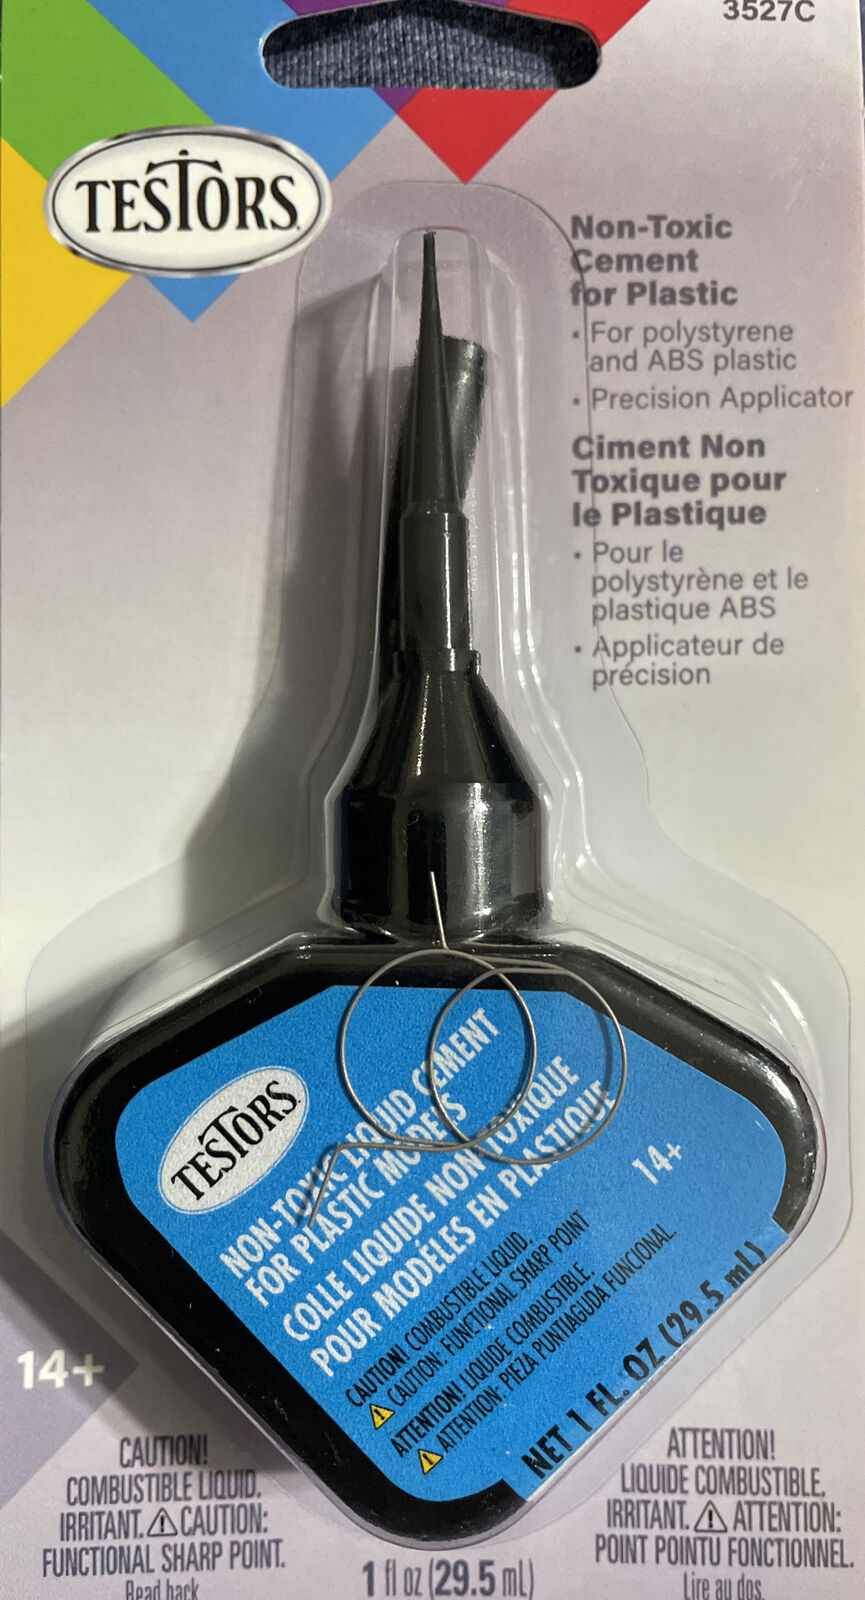 Testors Non-Toxic Liquid Cement with Precision Applicator 3527C